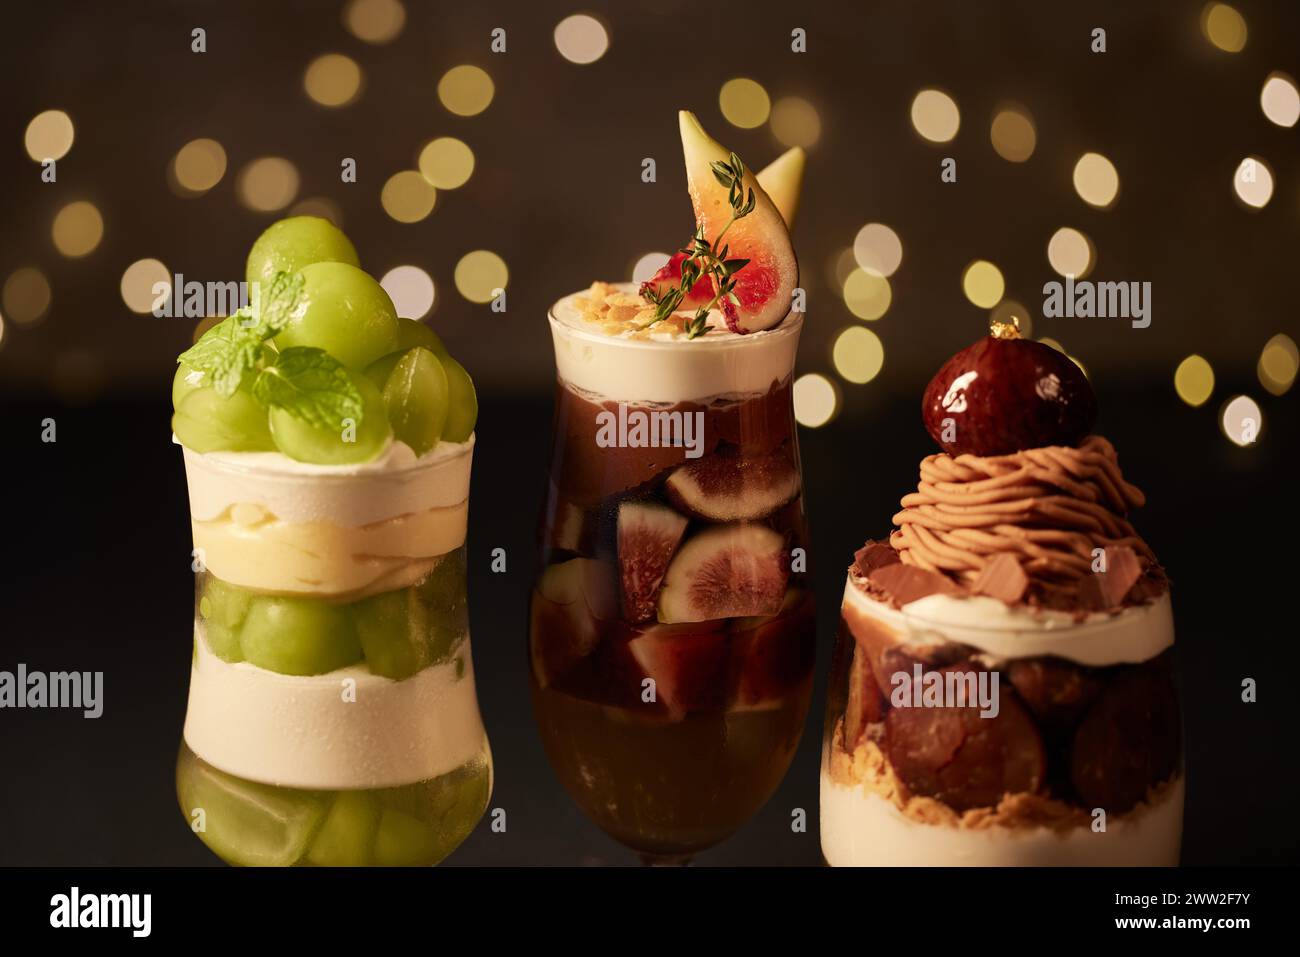 Trois desserts différents dans des verres sur un fond sombre Banque D'Images